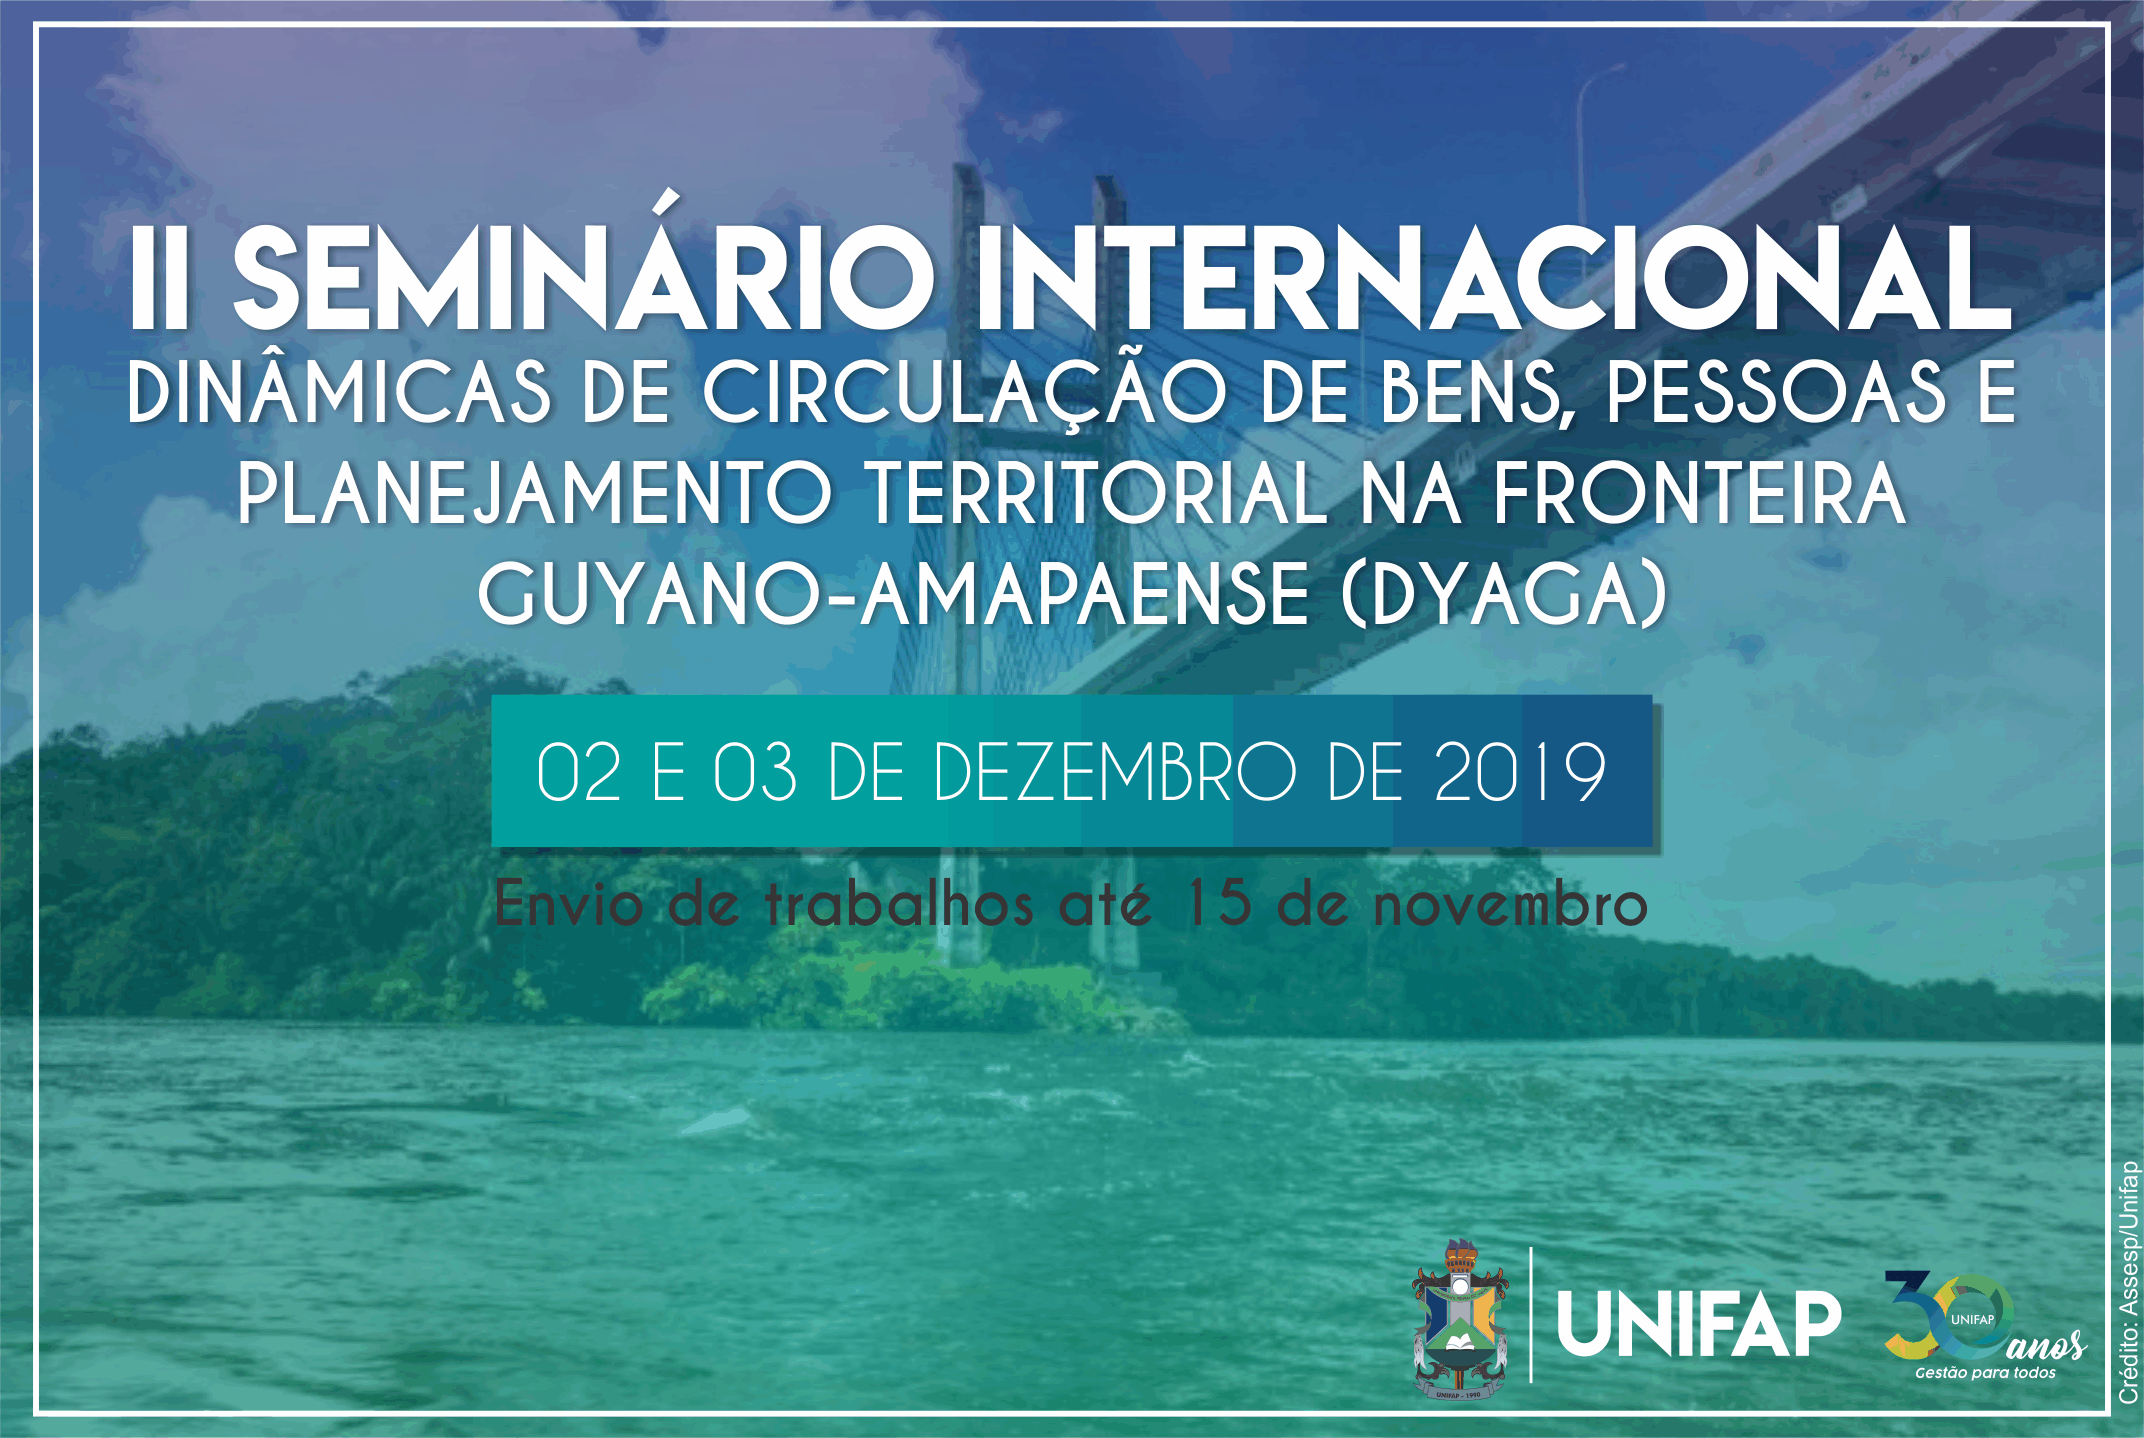 Campus Binacional receberá 2º Seminário Internacional Guyano-amapaense